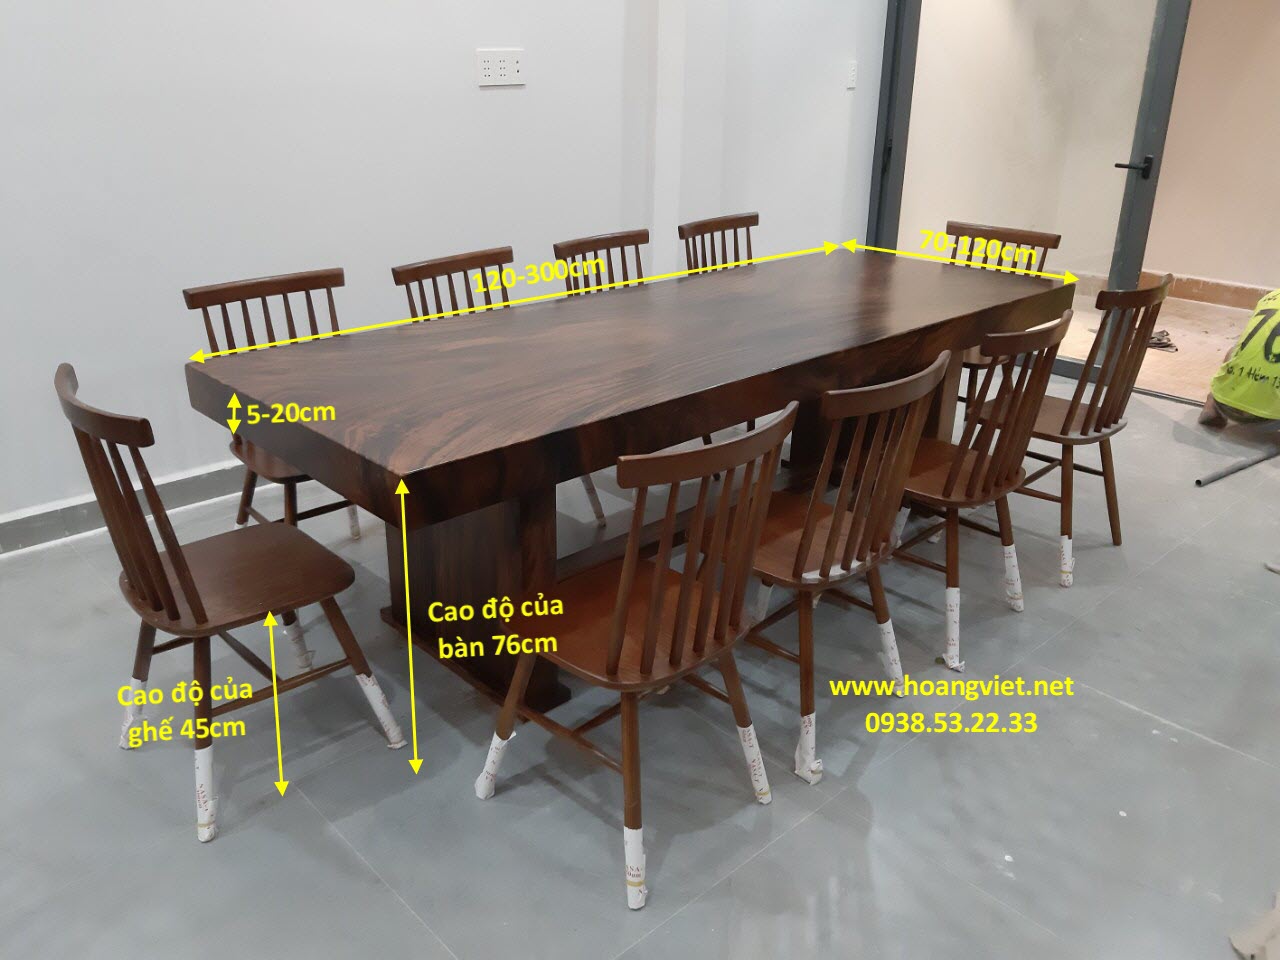 Kích thước bàn ghế gỗ nguyên khối sẽ khiến bạn ngạc nhiên bởi quy mô lớn và thiết kế độc đáo của nó. Đây là sản phẩm hiếm, được tạo ra bởi các nghệ nhân tài ba, đảm bảo về độ chắc chắn và mang lại vẻ đẹp đặc biệt cho không gian nơi bạn sử dụng.